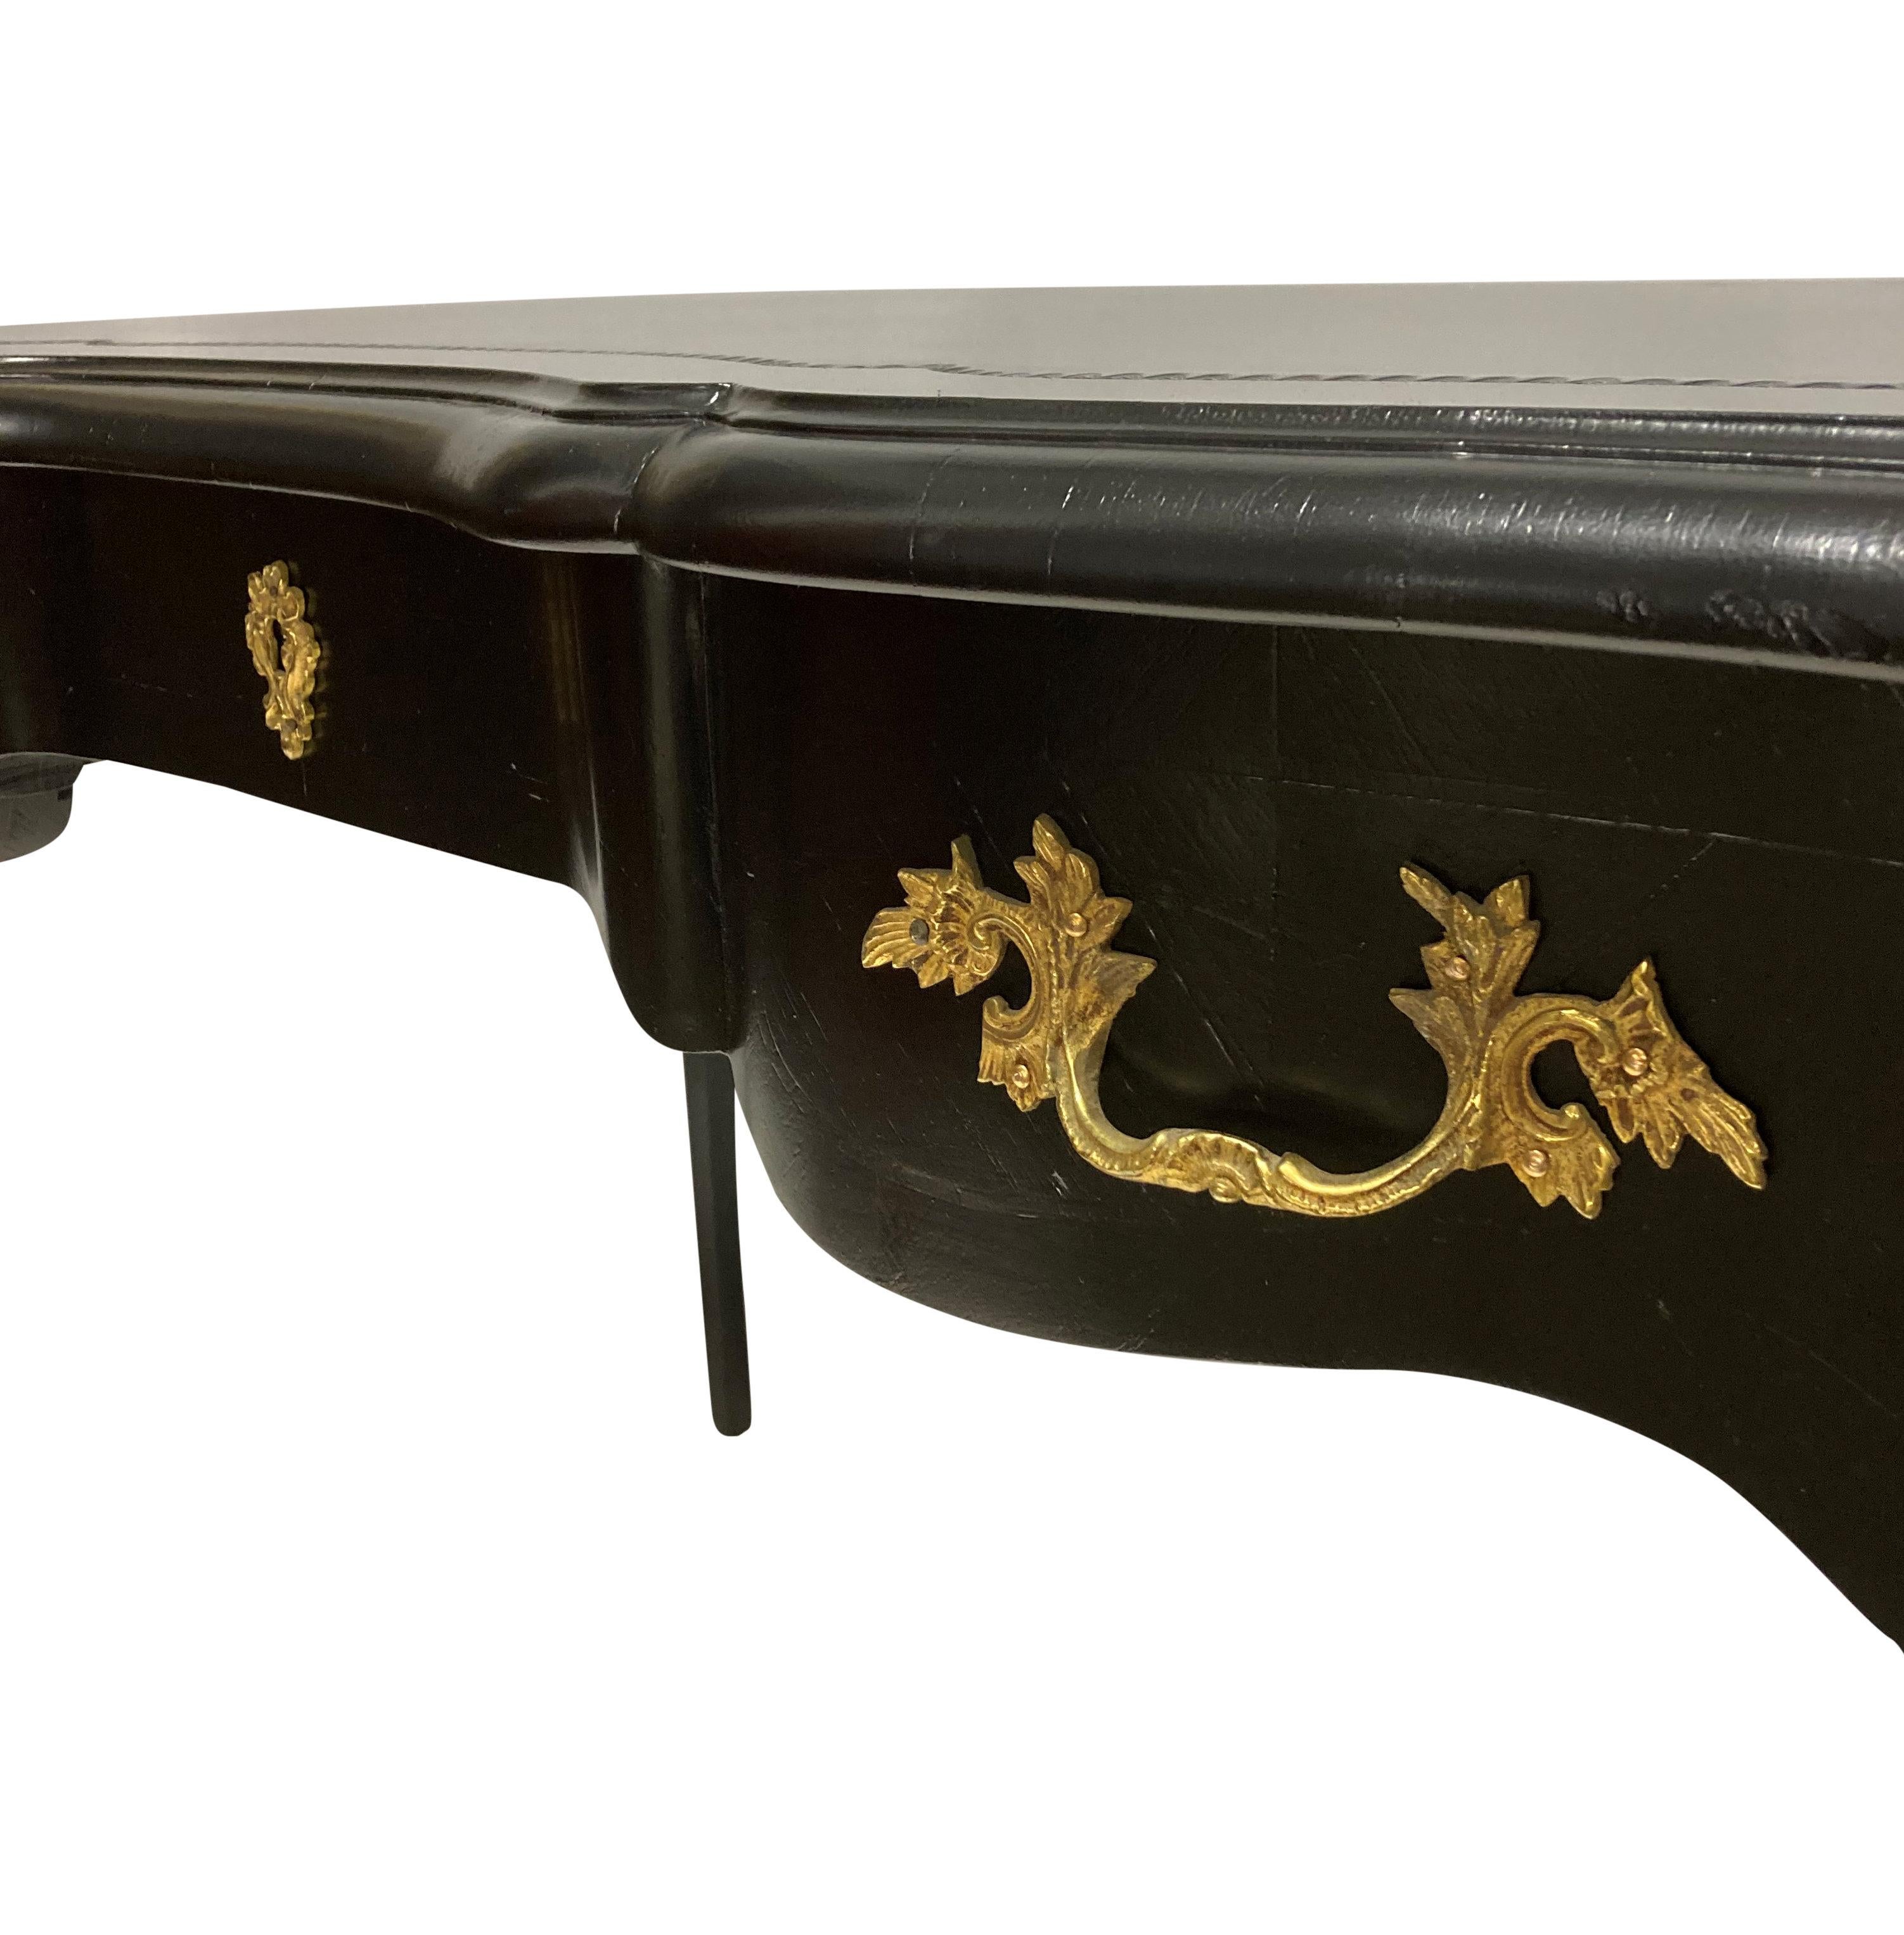 Ein Französisch Louis XV Stil schwarz lackiert Schreibtisch oder bureau plat. Mit drei funktionstüchtigen Schubladen, einschließlich Originalschlüssel und Blindschubladen an der Vorderseite. Durchgehend mit feinen vergoldeten Bronzebeschlägen